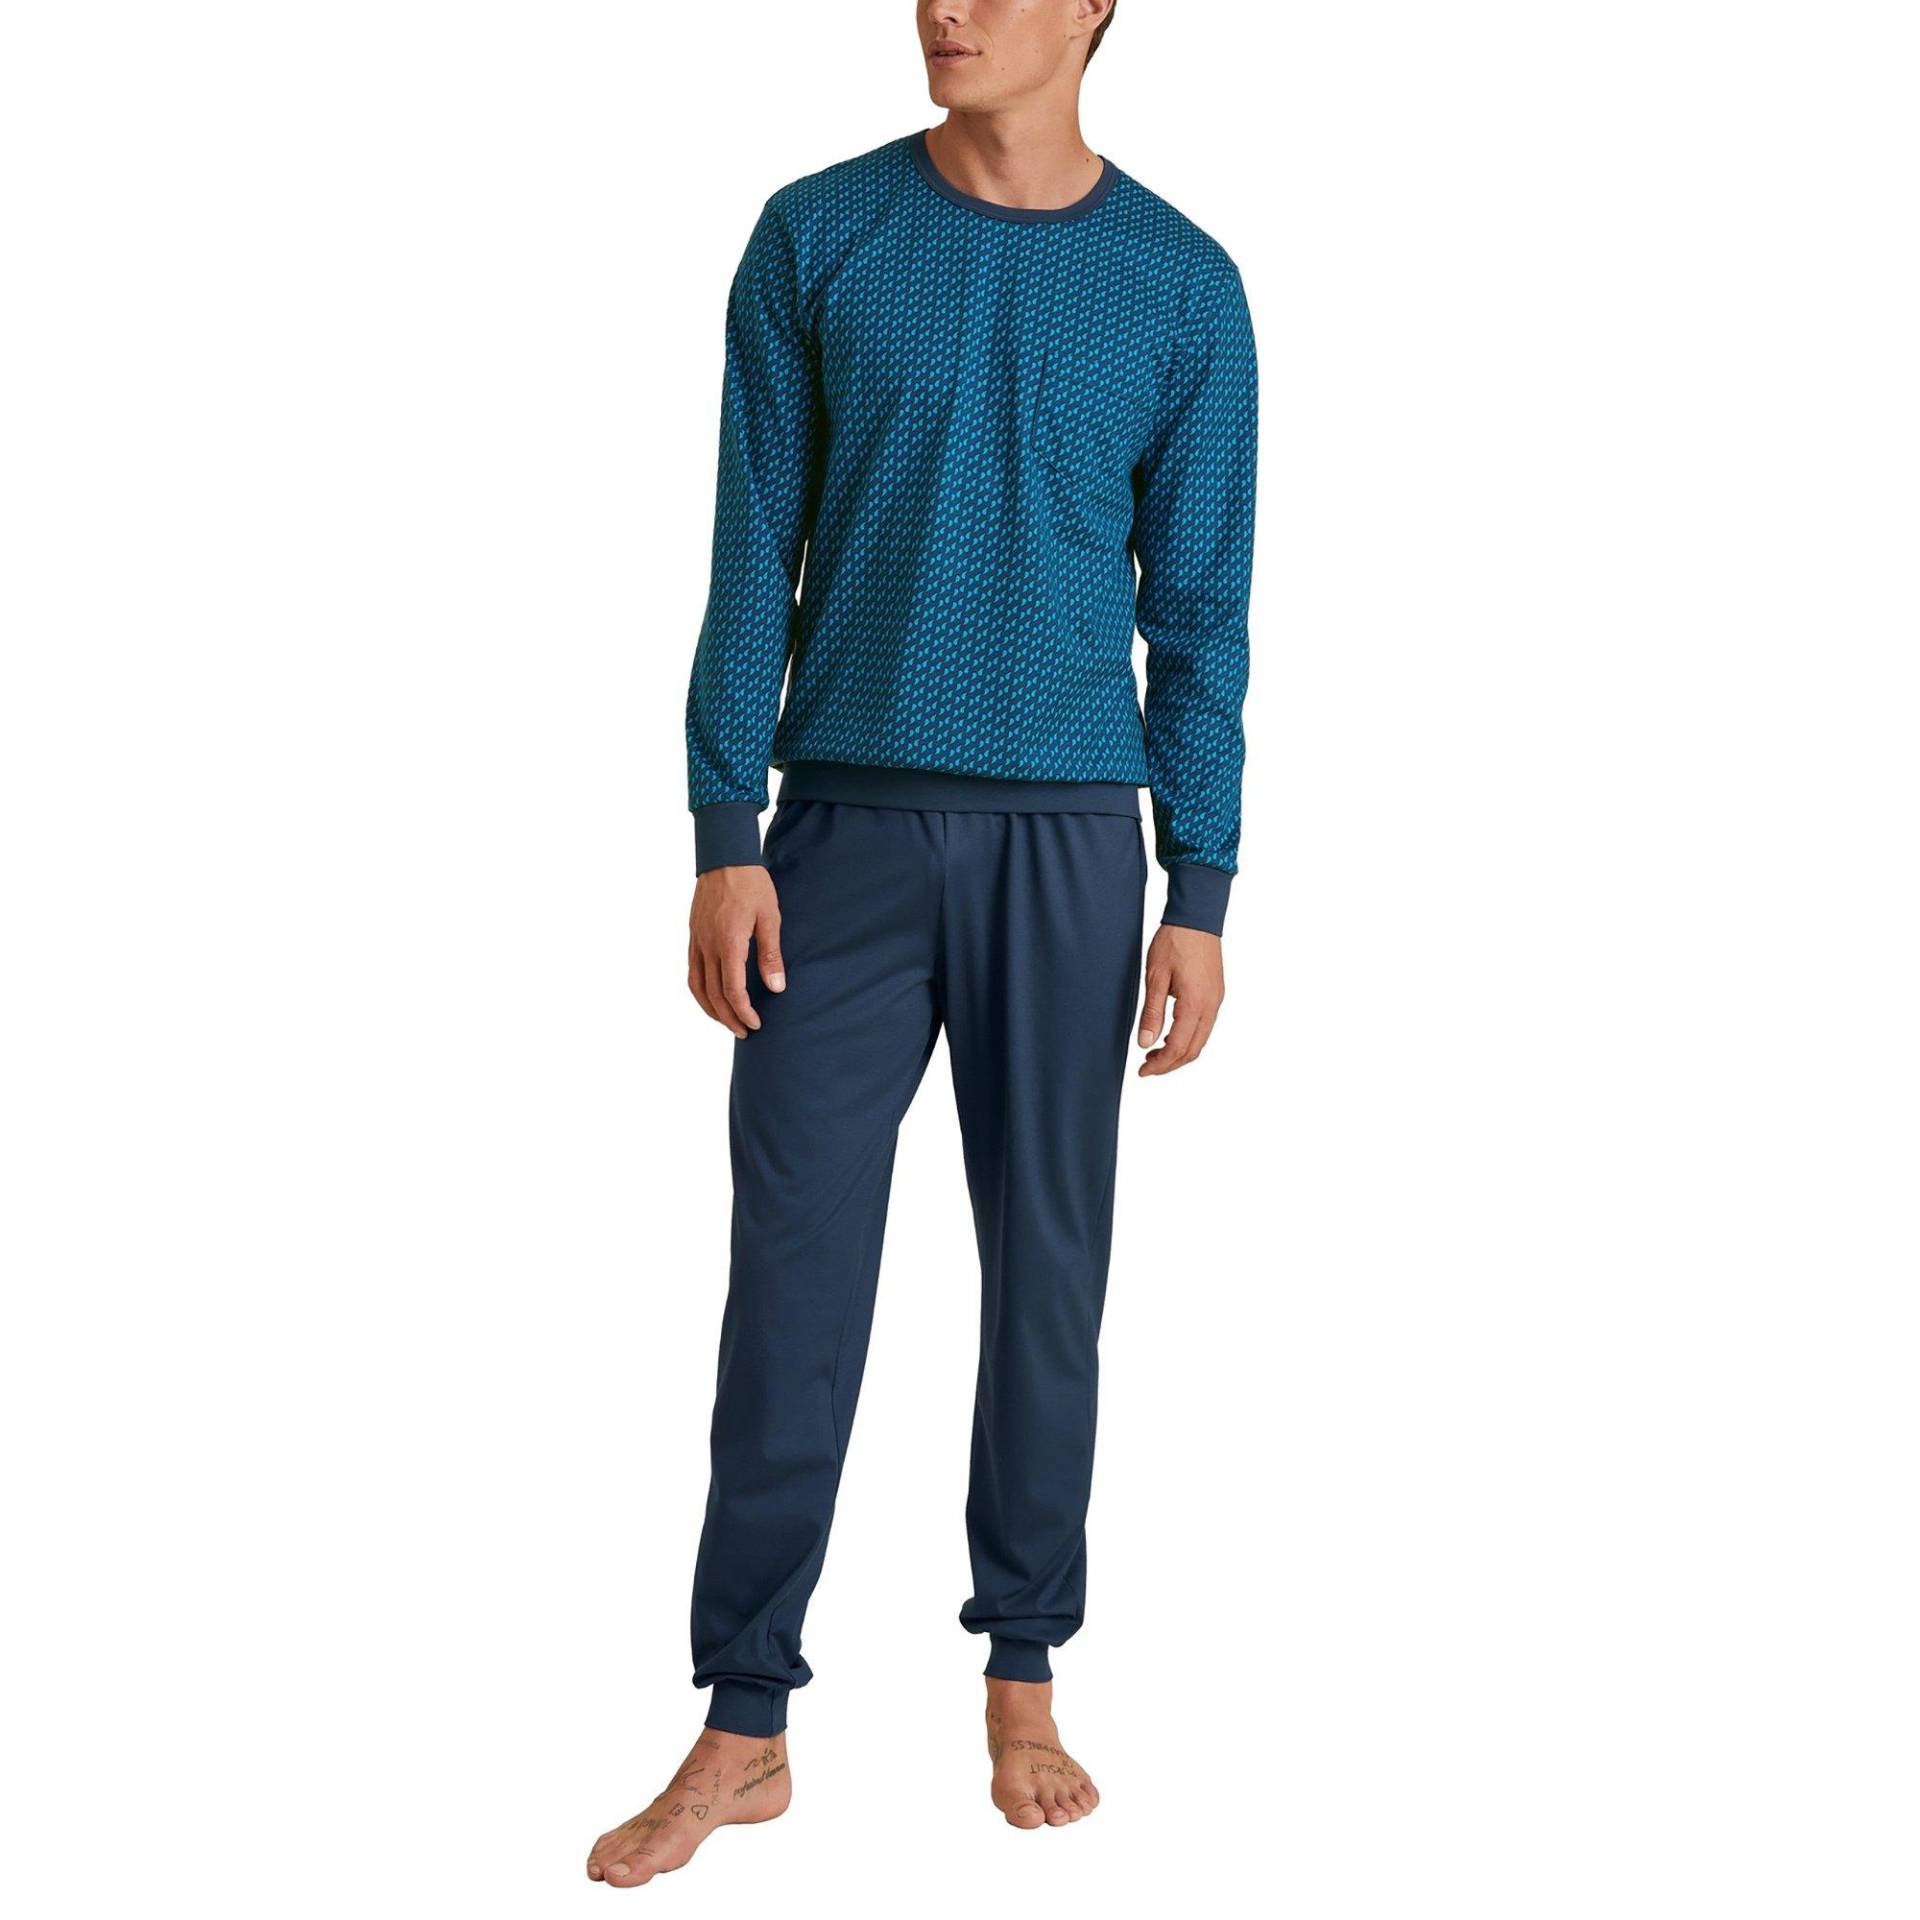 Pyjama Herren Blau Bunt M von CALIDA